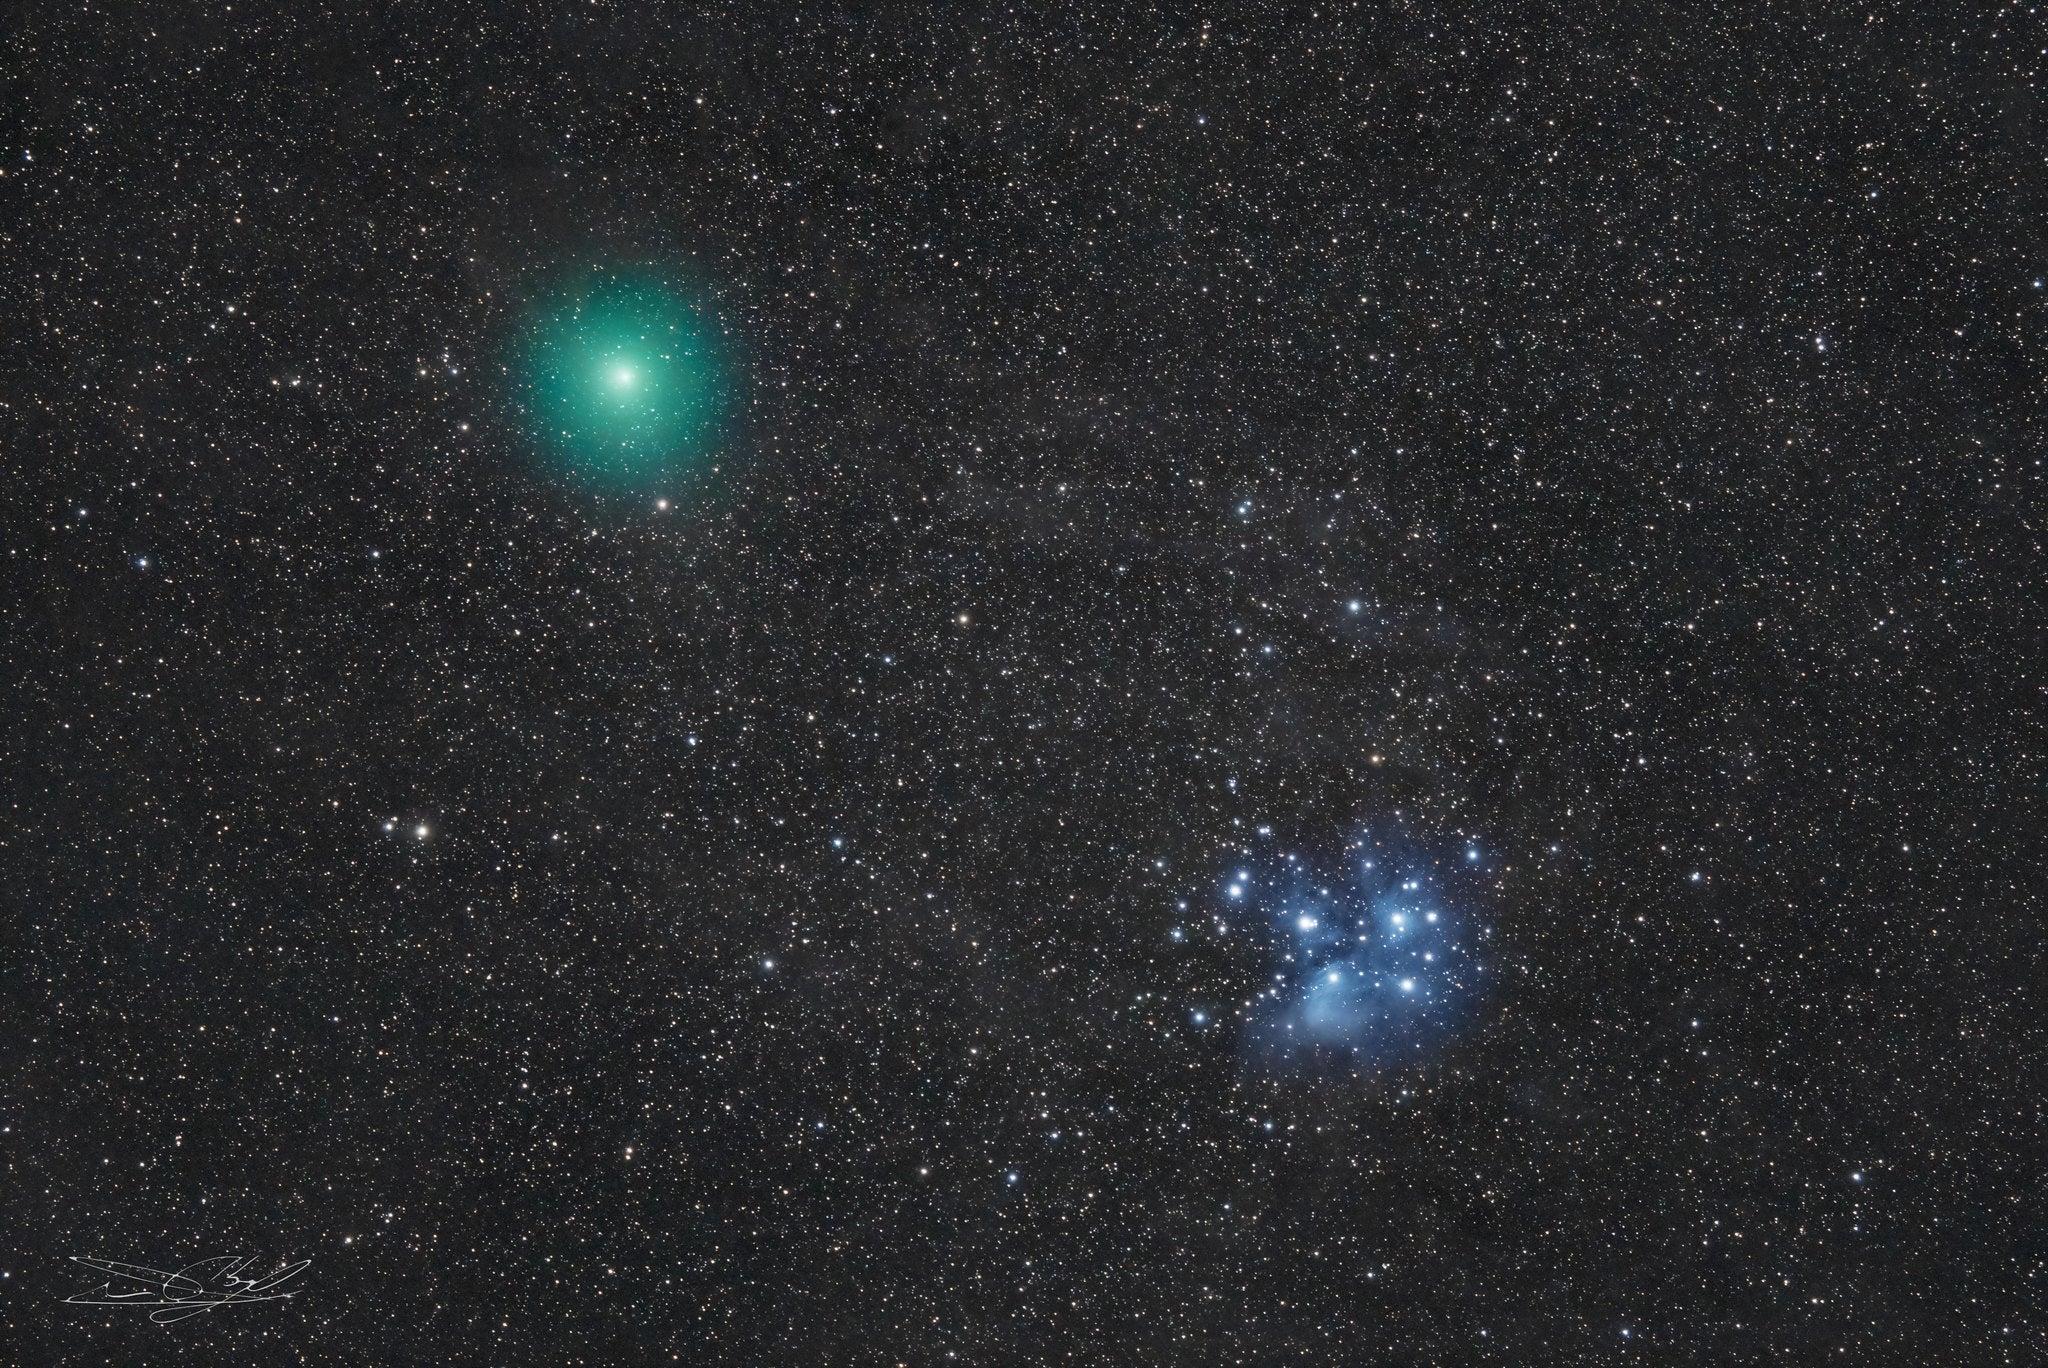 Comet 46P/Wirtanen (Image: Abel de Burgos/Flickr, Fair Use)